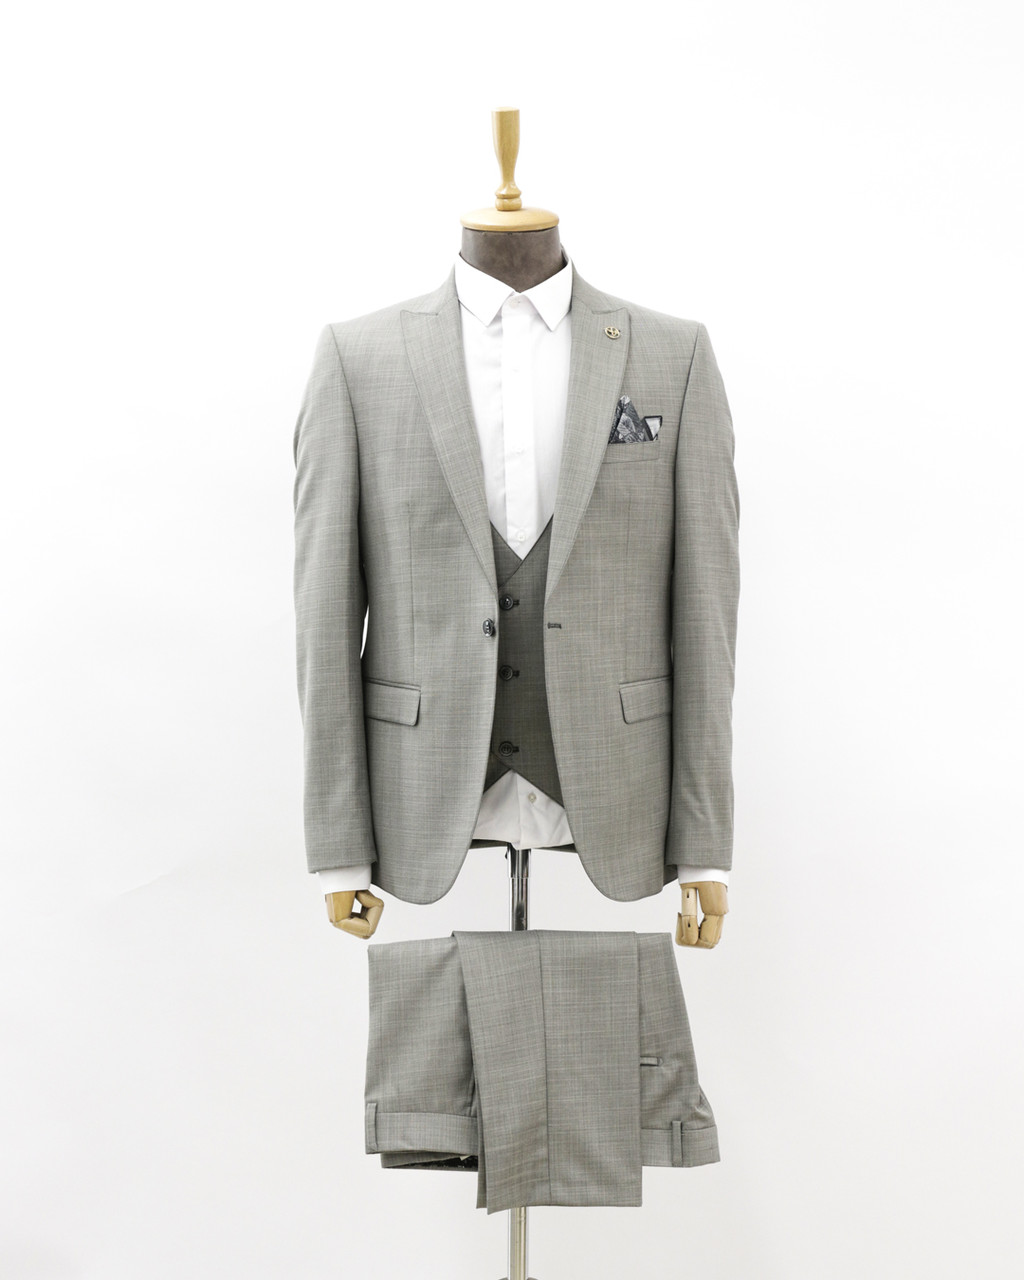 Мужской деловой костюм «UM&H 66438902» серый, фото 1